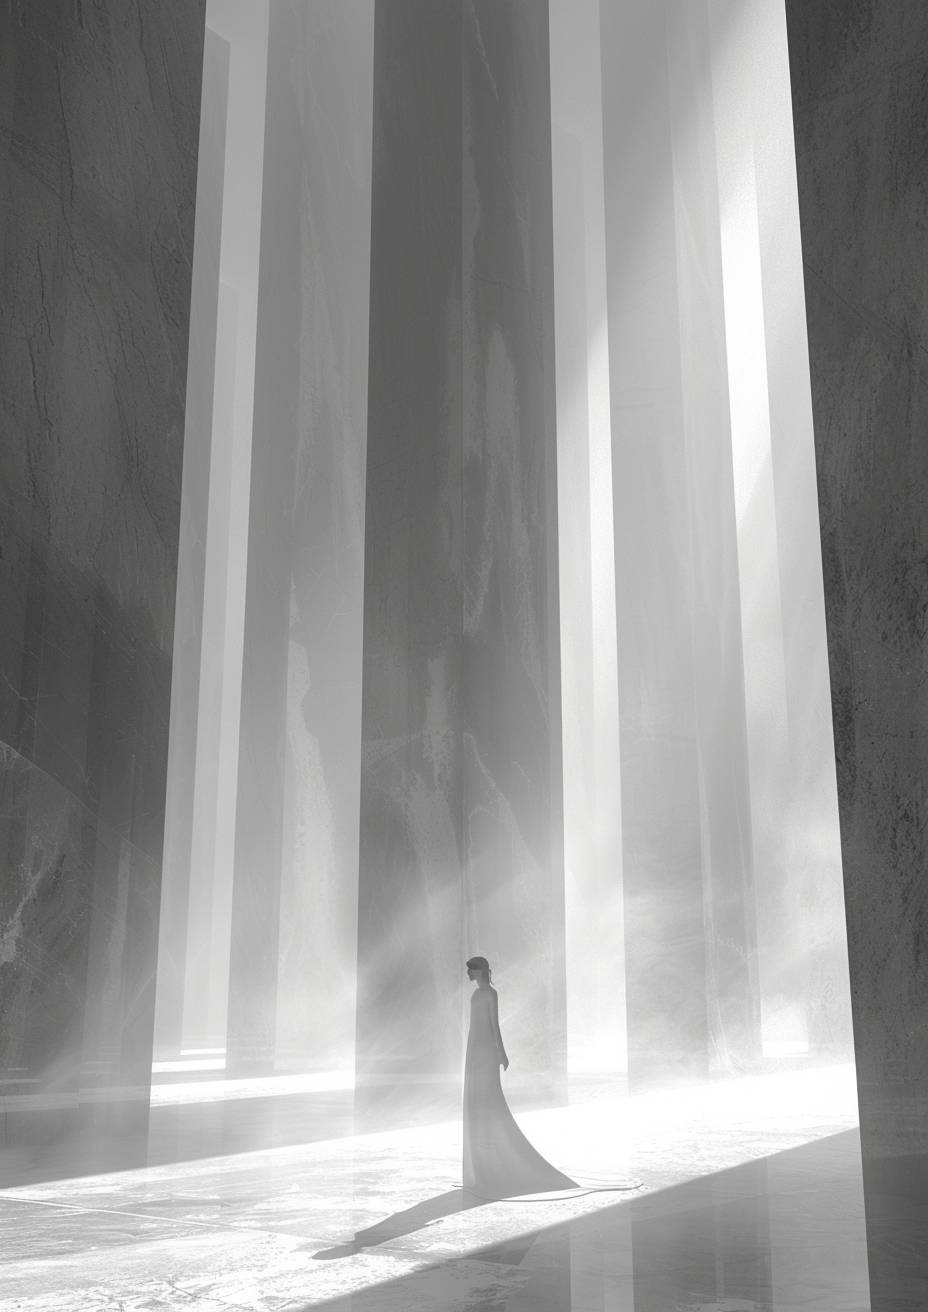 霧に満ちた境界の曖昧な空間の中で、白い幾何学的な彫刻、規則的な石の柱、遠くに美しい女性、モノクローム、超現実的で夢のような雰囲気、拡散した光、ミニマリストの強烈なビジュアルフロー